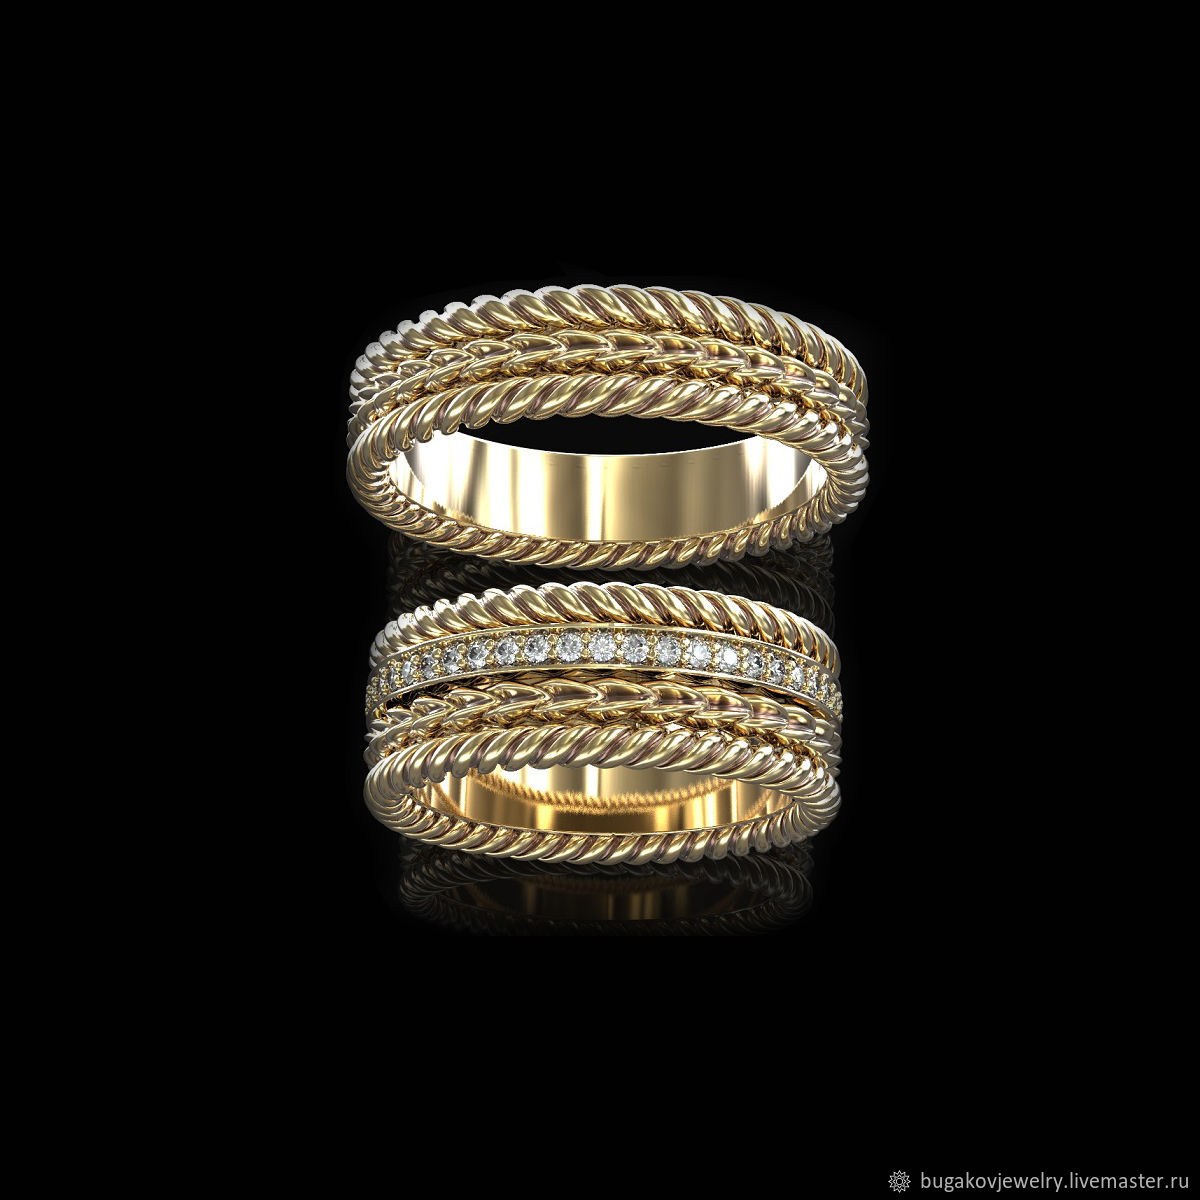 Кольцо обручальное рифленое золотое